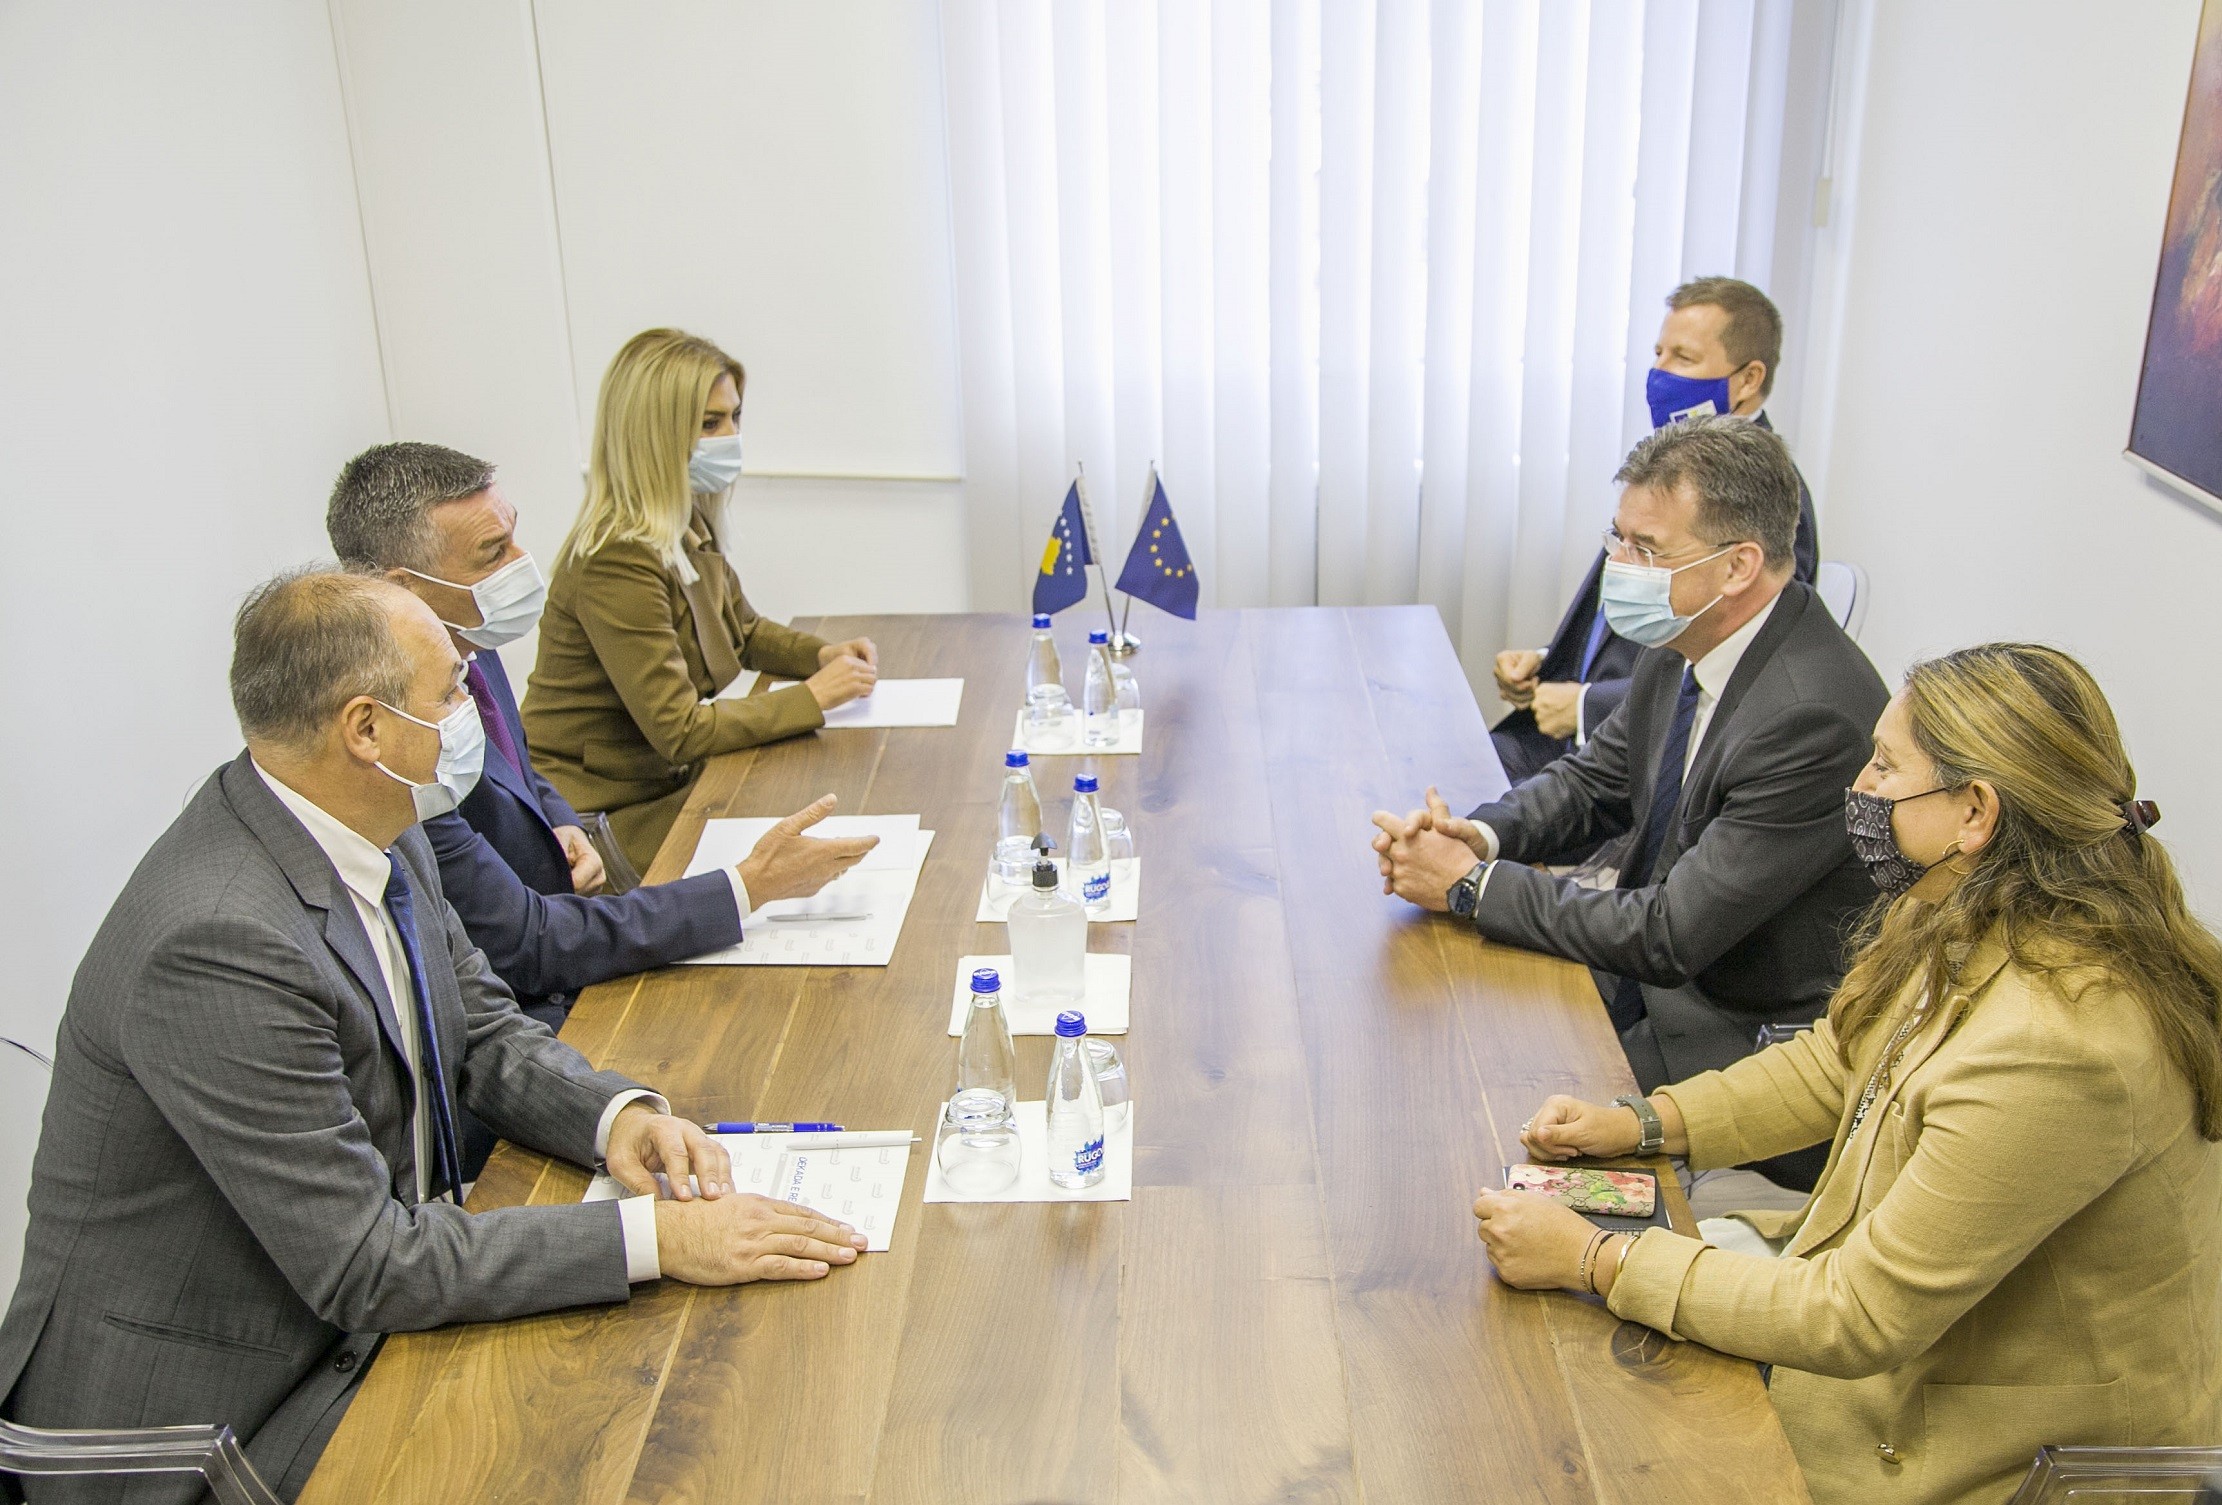 Kosovës i duhet një marrëveshje finale me Serbinë, që sjellë njohje reciproke  